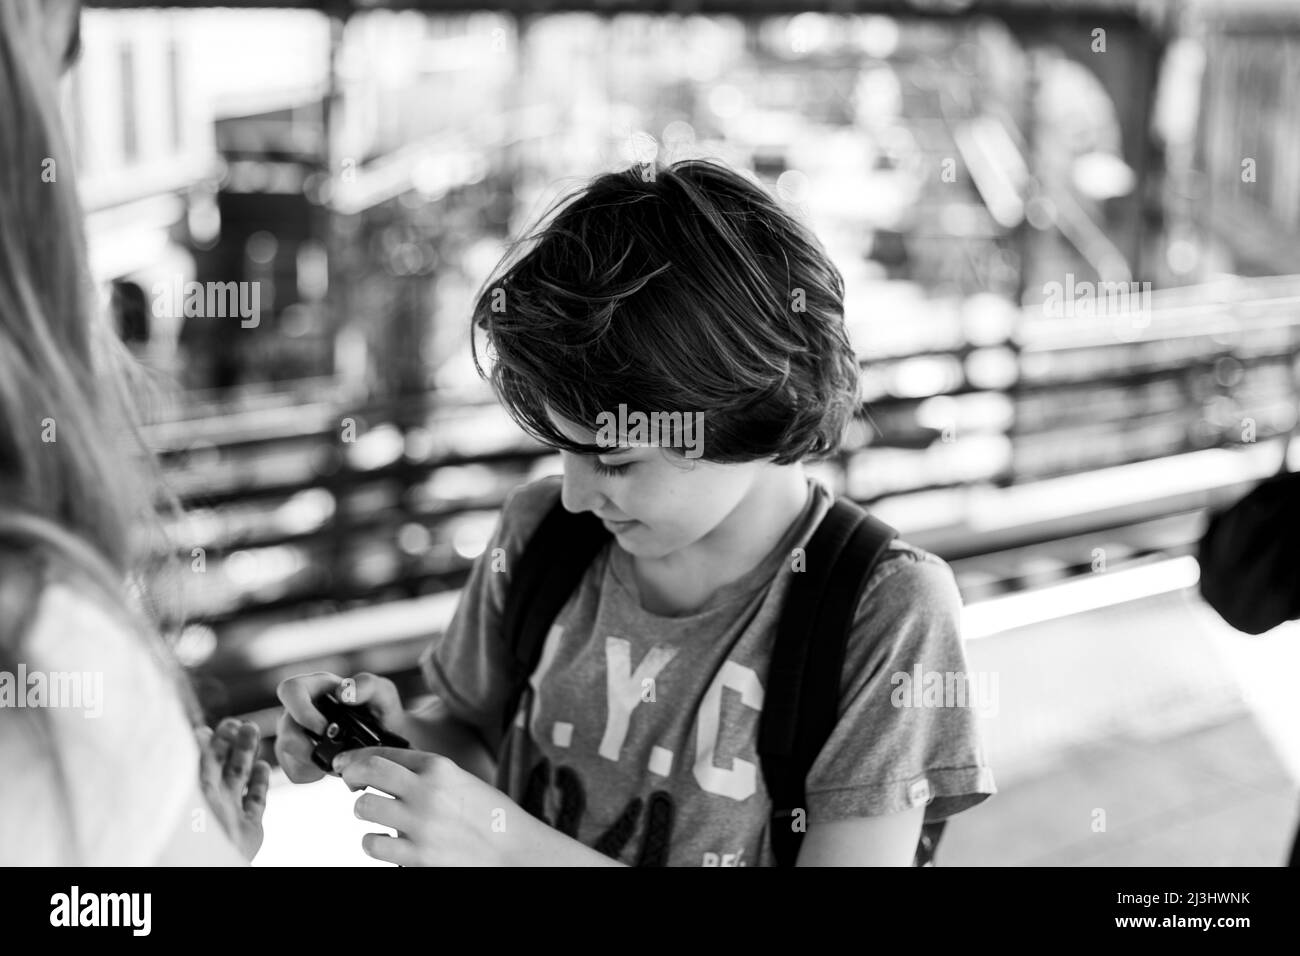 Myrtle AV, New York City, NY, USA, 12 Jahre alter kaukasischer Teenager-Junge – mit braunen Haaren und im Sommer-Outfit an der U-Bahn-Station Stockfoto